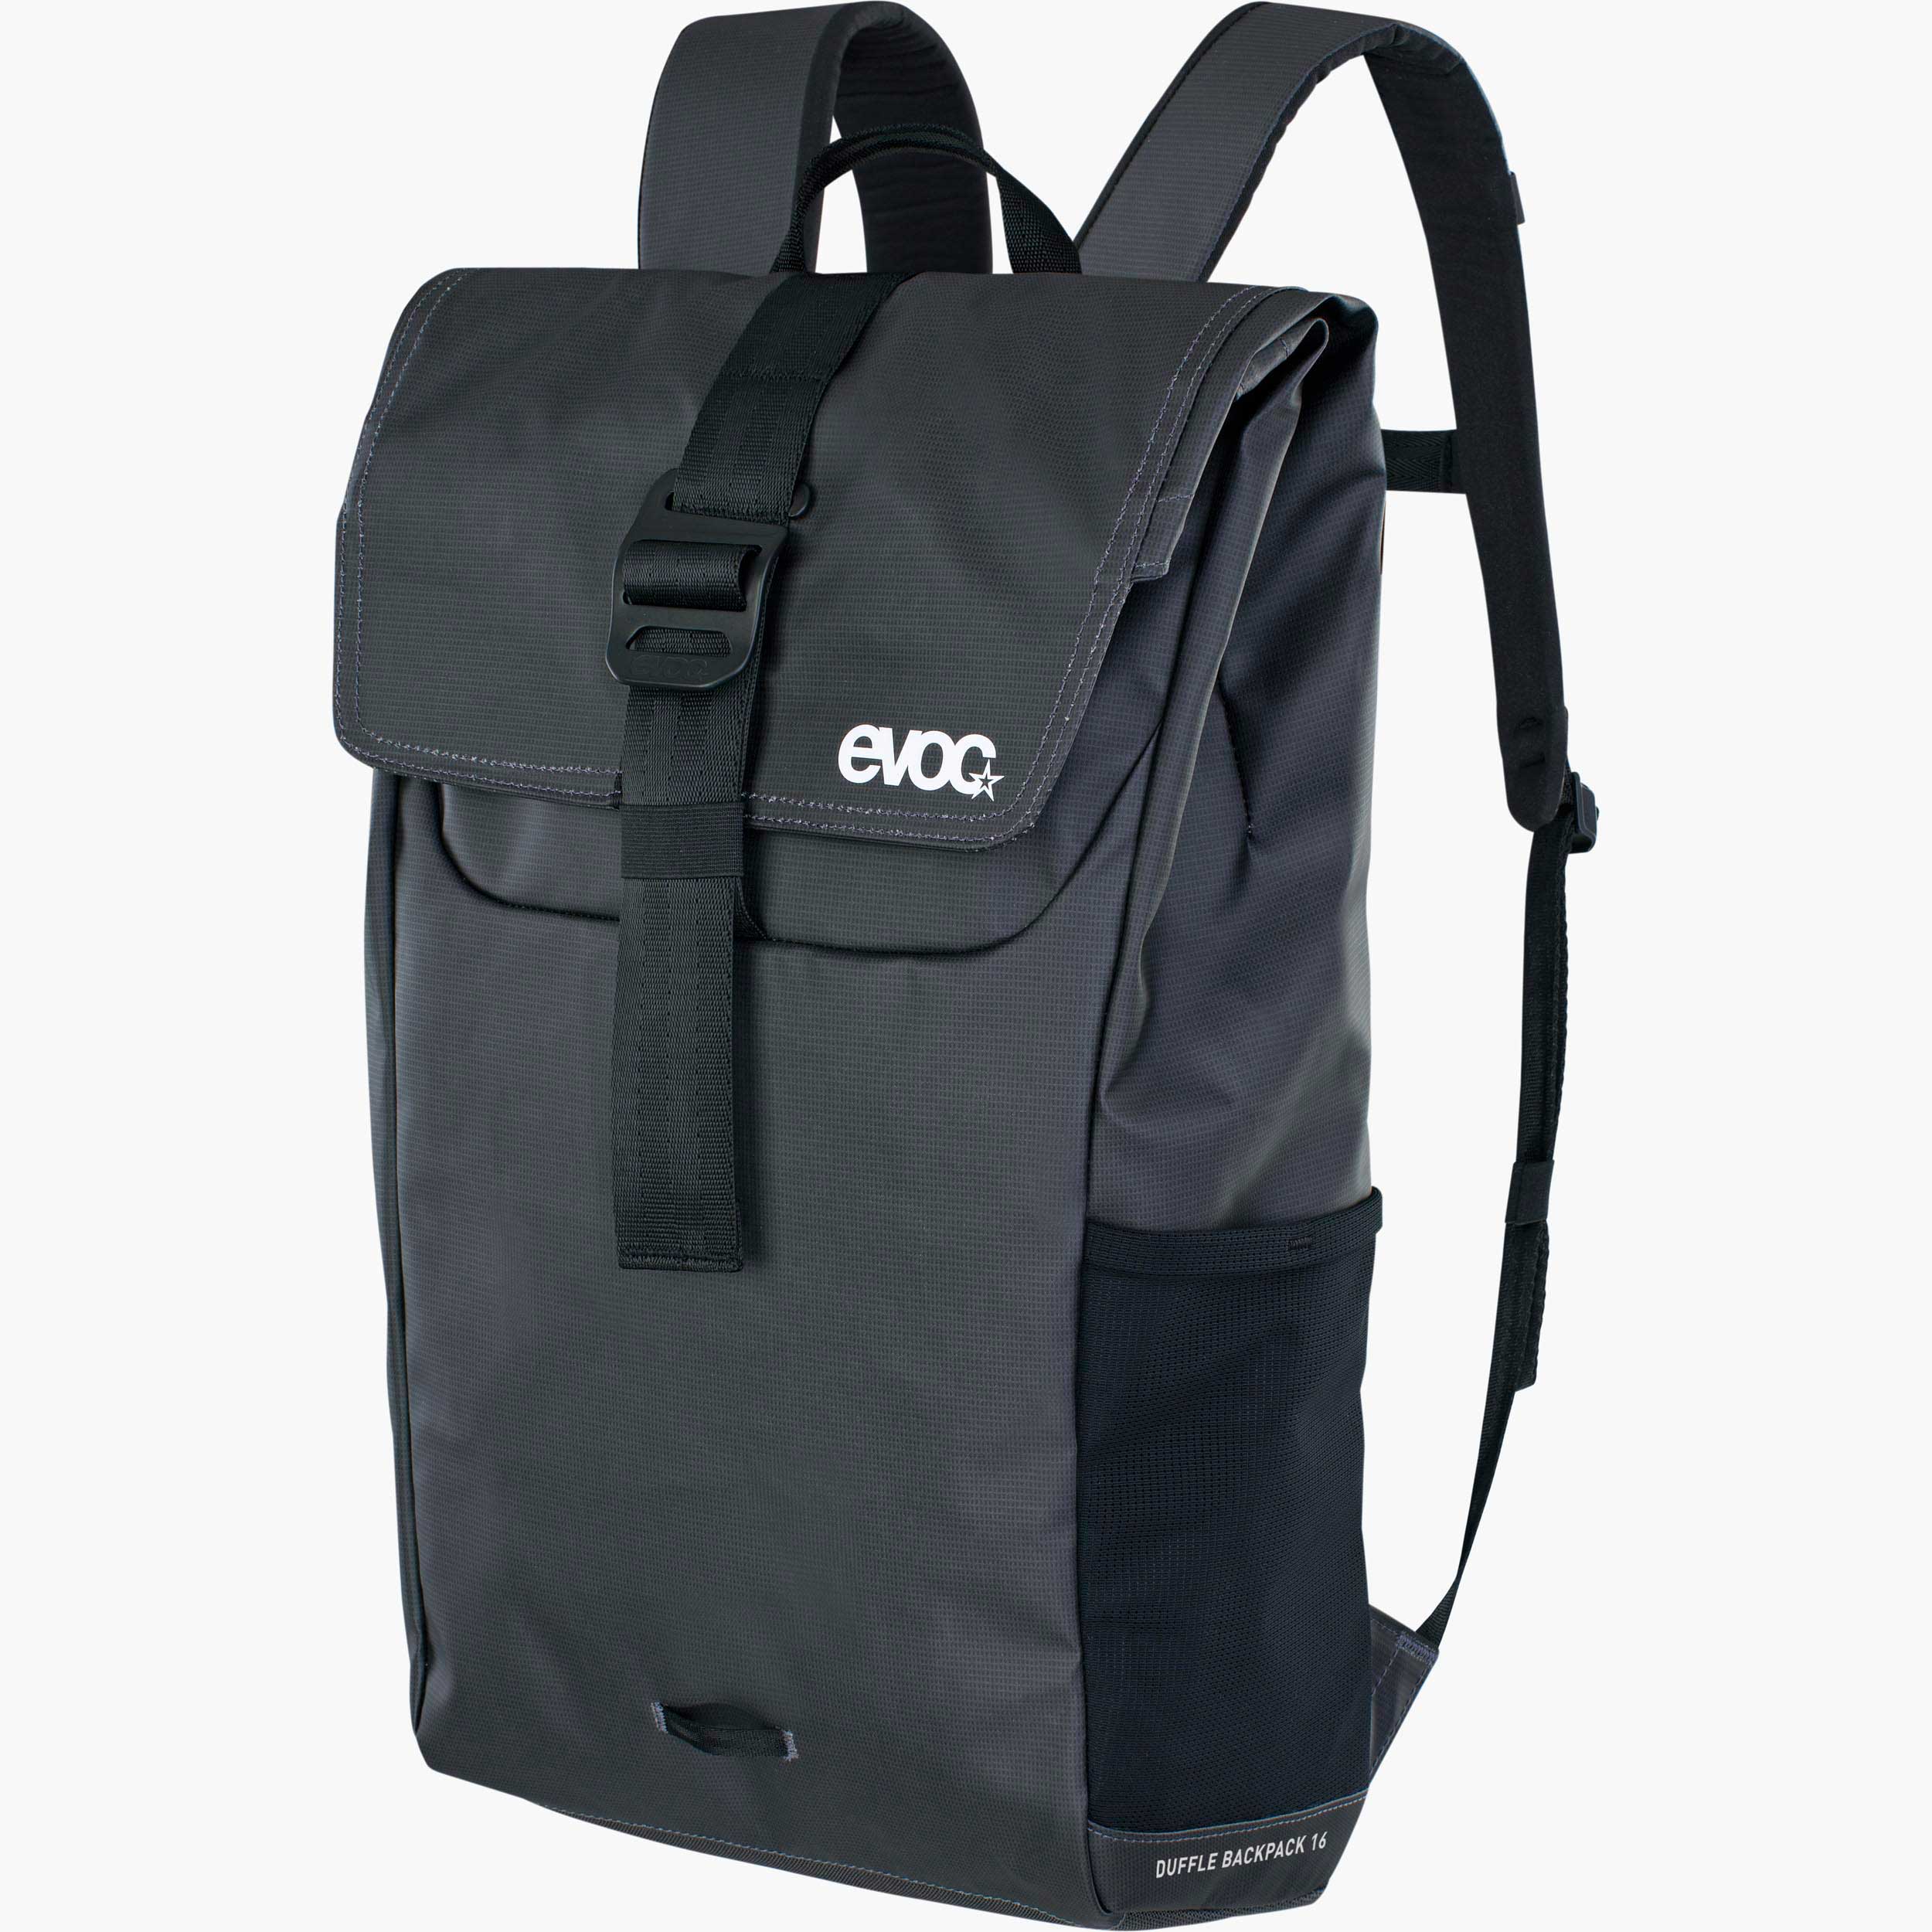 2022年最新春物 EVOC, Duffle Backpack 16, 16L, Carbon Grey/Black 